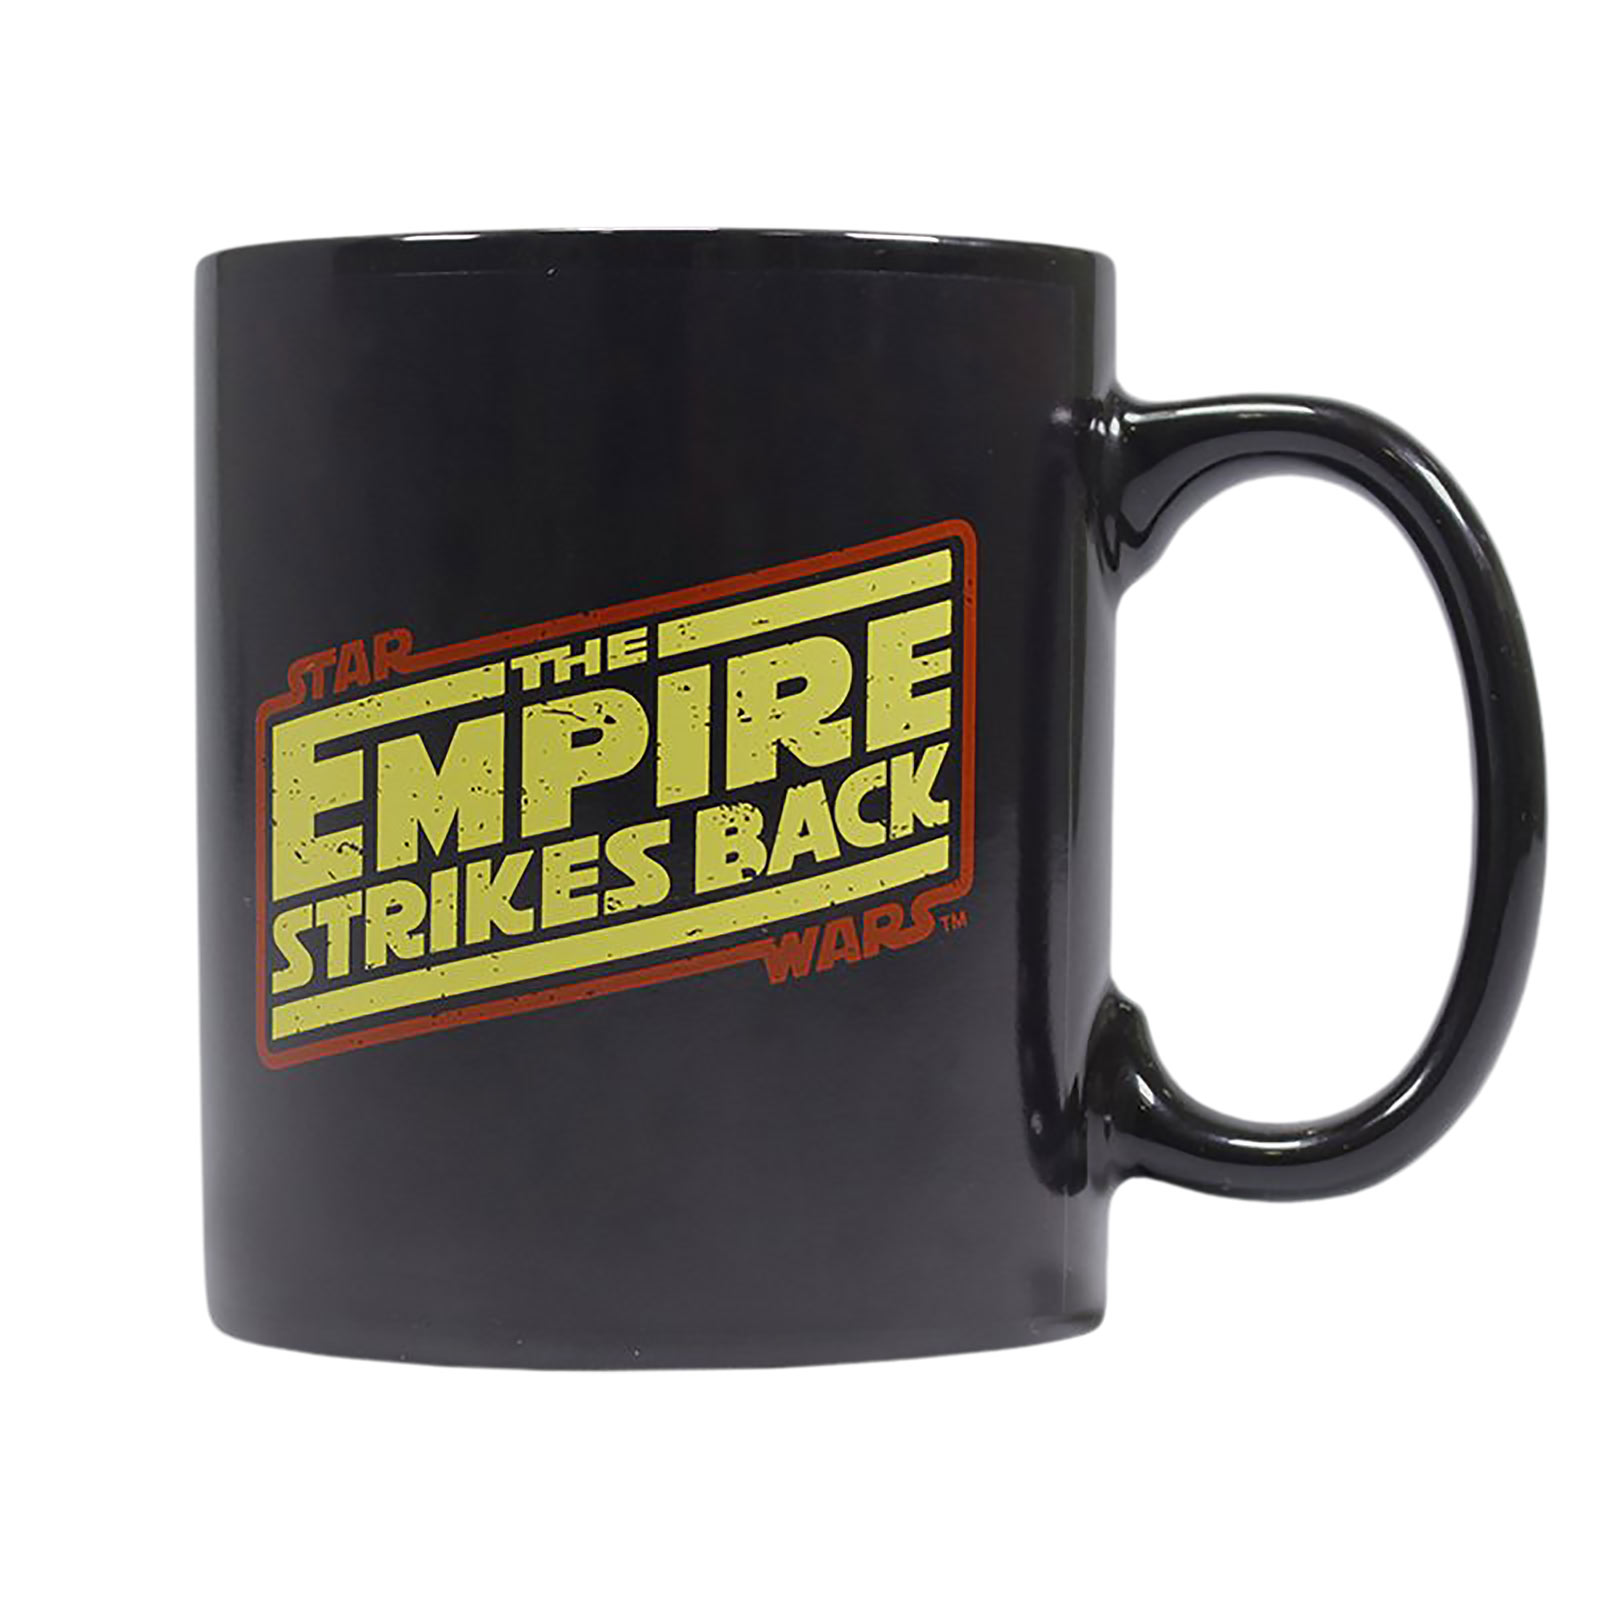 Star Wars - The Empire Strikes Back Thermoeffekt Tasse